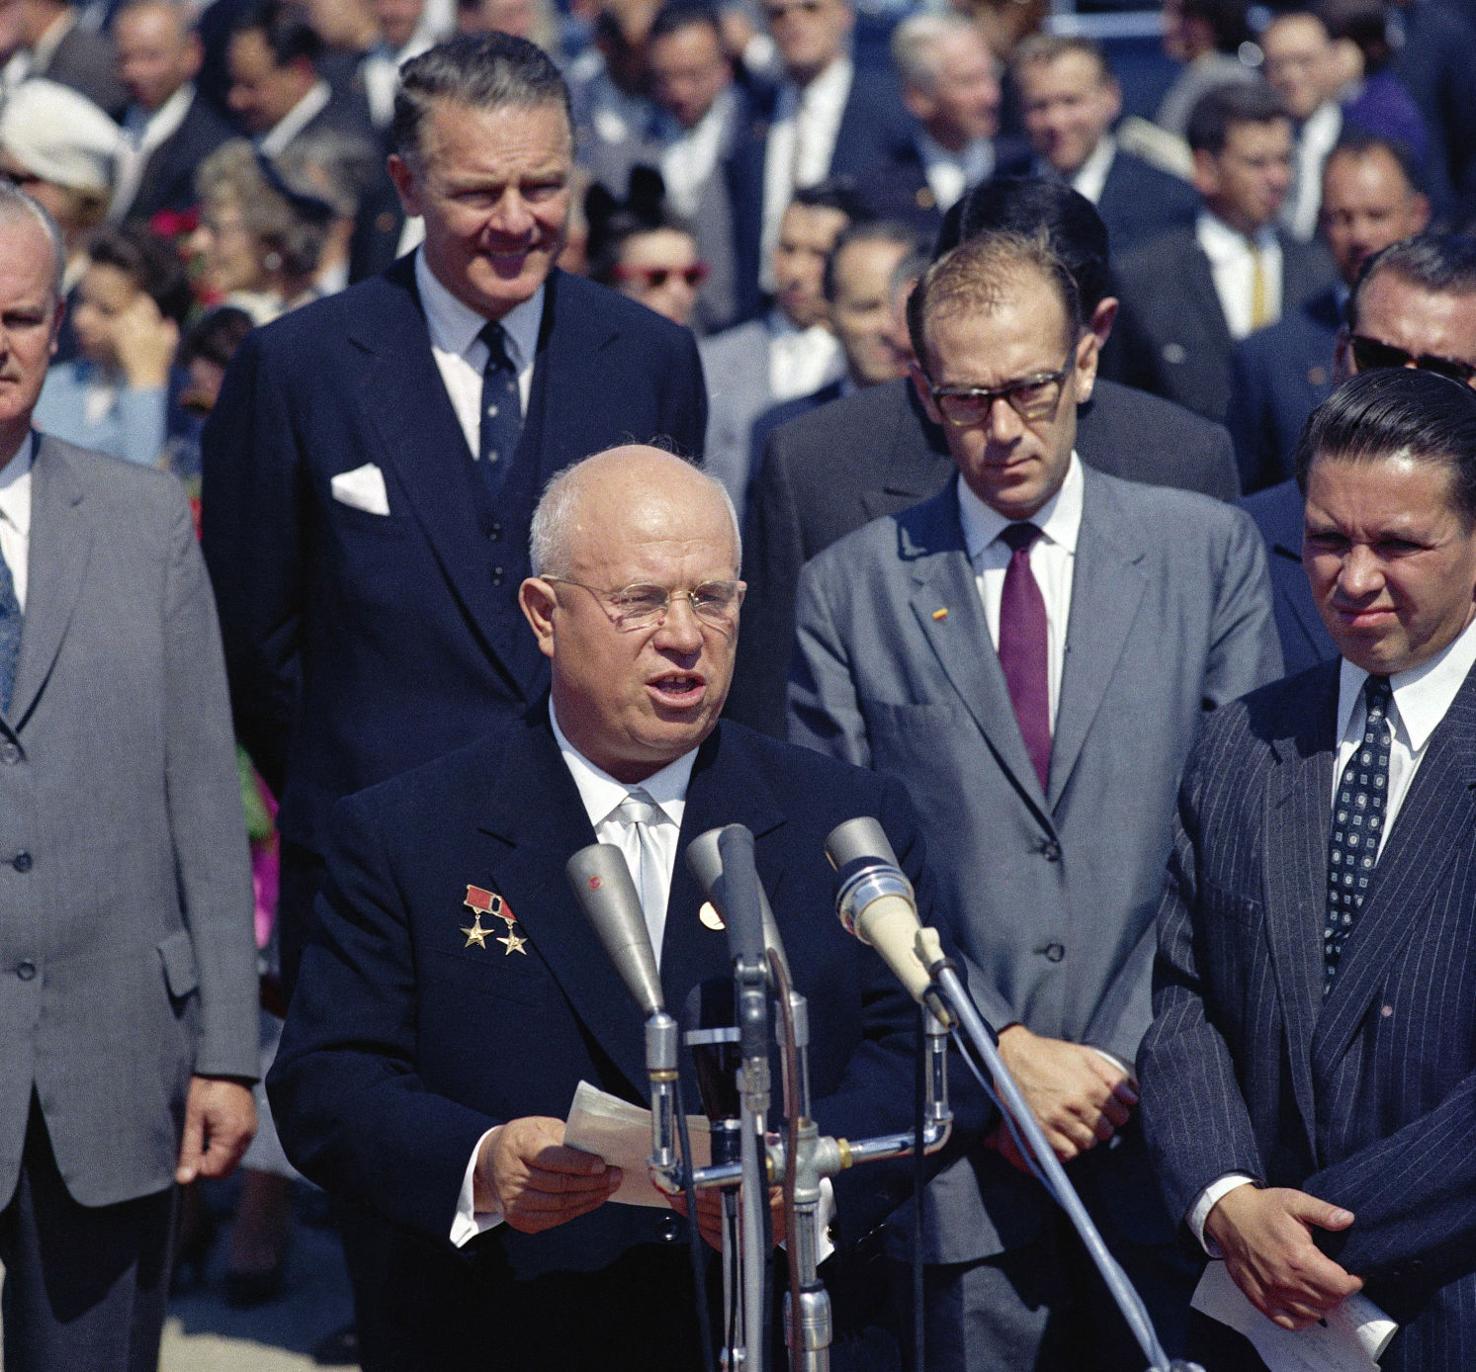 khrushchev visit to us 1959